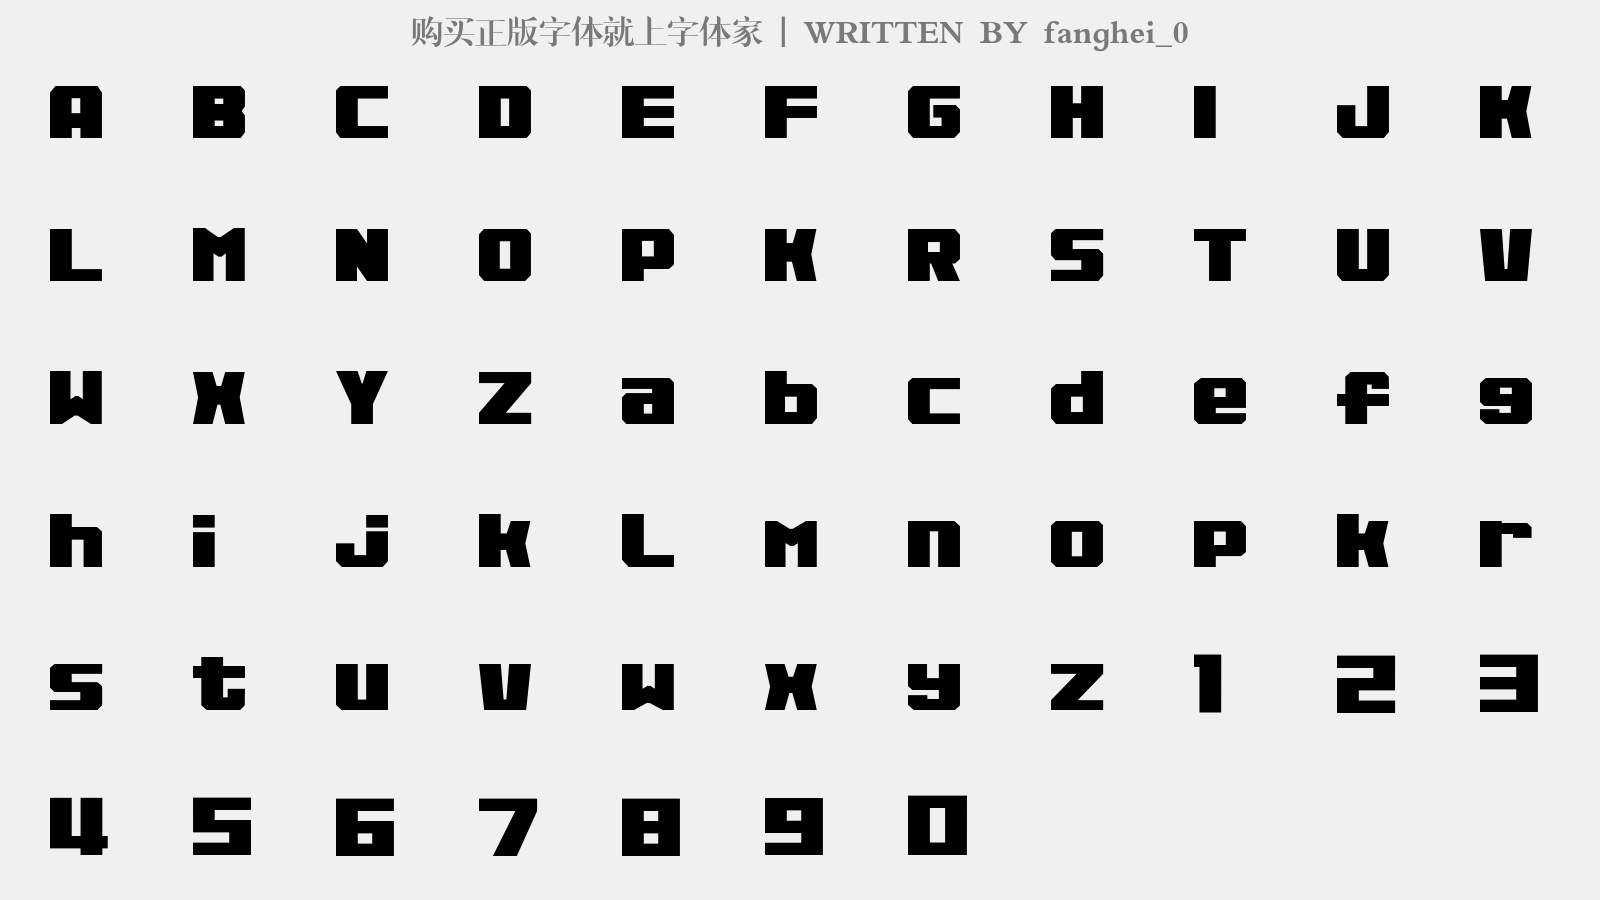 fanghei_0 - 大写字母/小写字母/数字